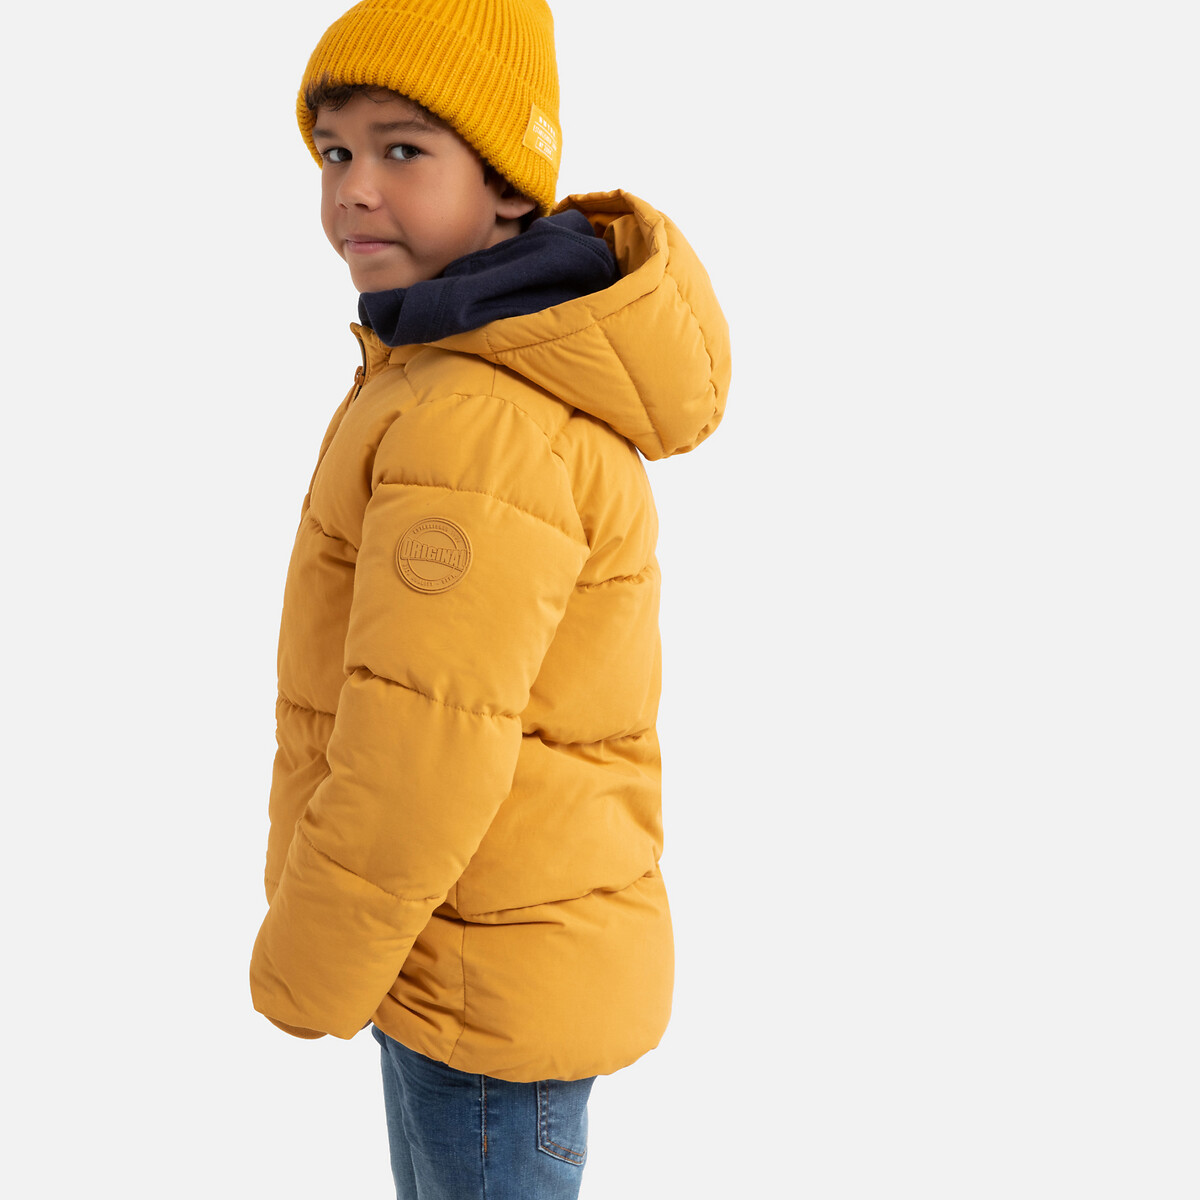 Куртка La Redoute Утепленная с капюшоном 3-12 лет 4 года - 102 см желтый, размер 4 года - 102 см